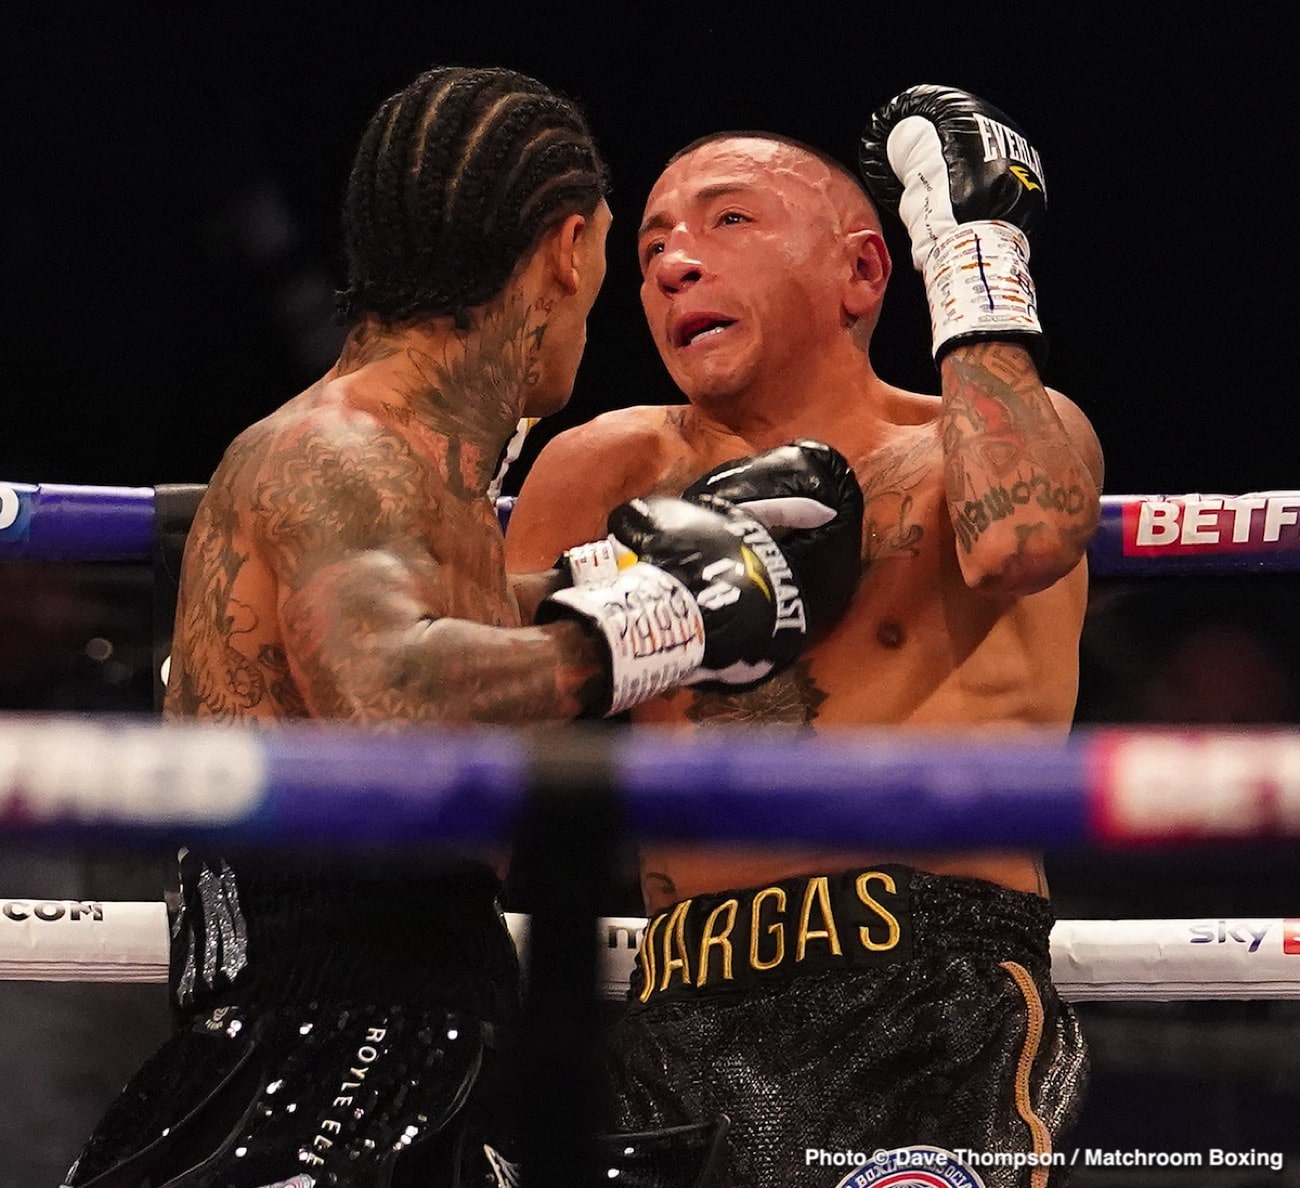 Samuel Vargas boxing image / photo